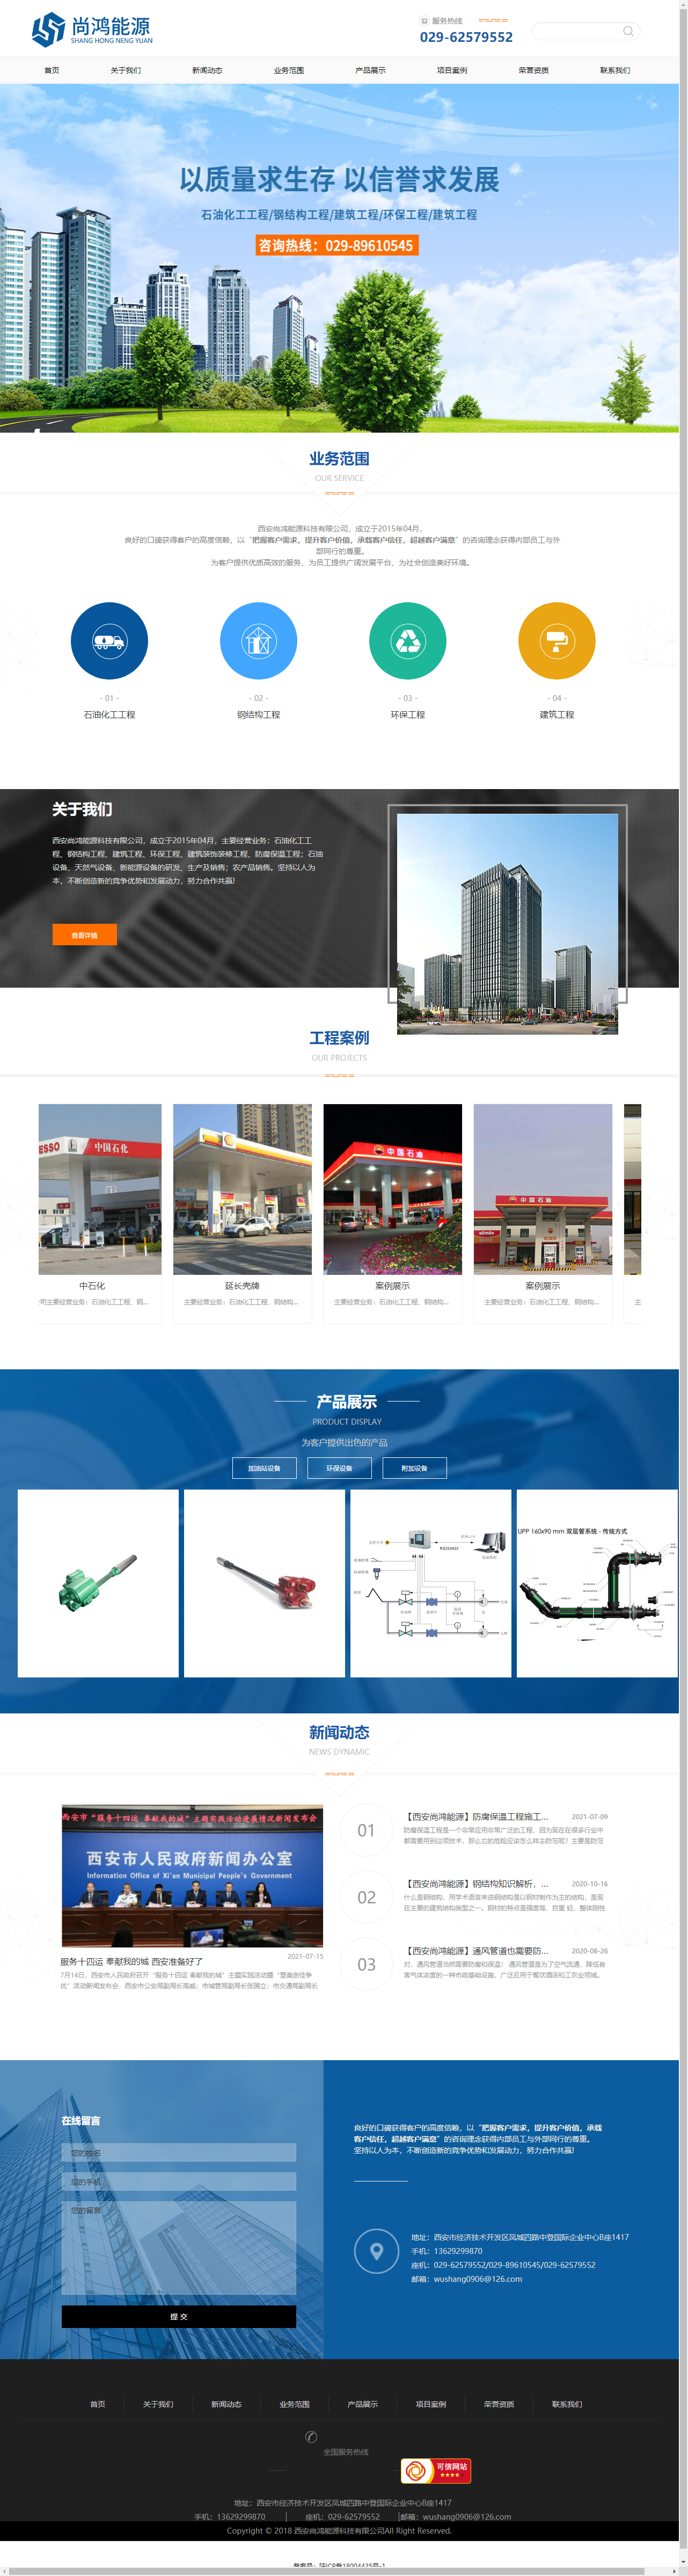 西安尚鸿能源科技有限公司网站案例